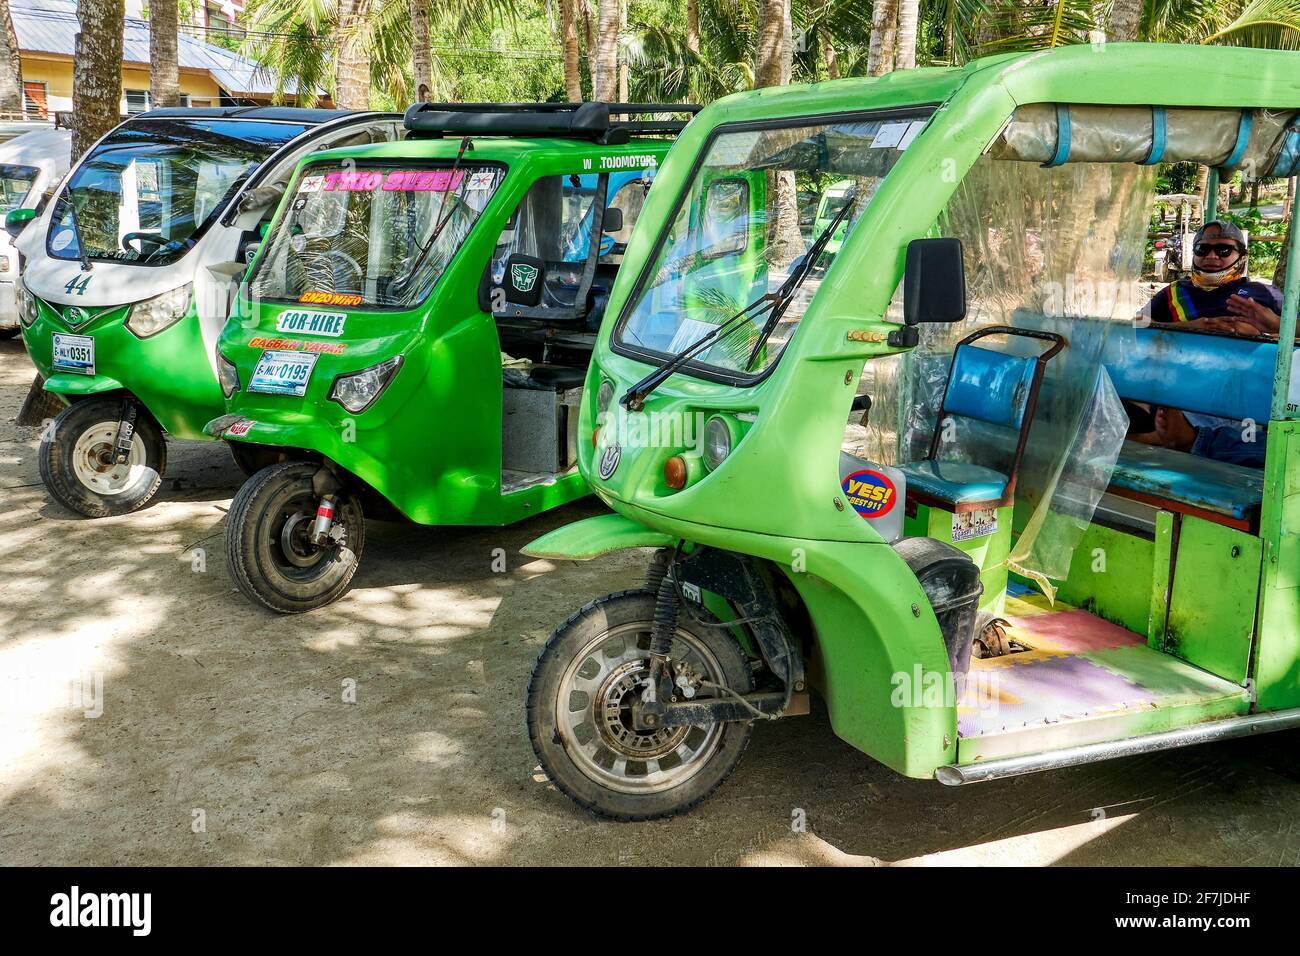 Drei grüne elektrische Trikes parken in der Nähe des Hafens von Cagban auf der Insel Boracay auf den Philippinen und warten auf Passagiere. Ein Fahrer im Trike sichtbar. Stockfoto